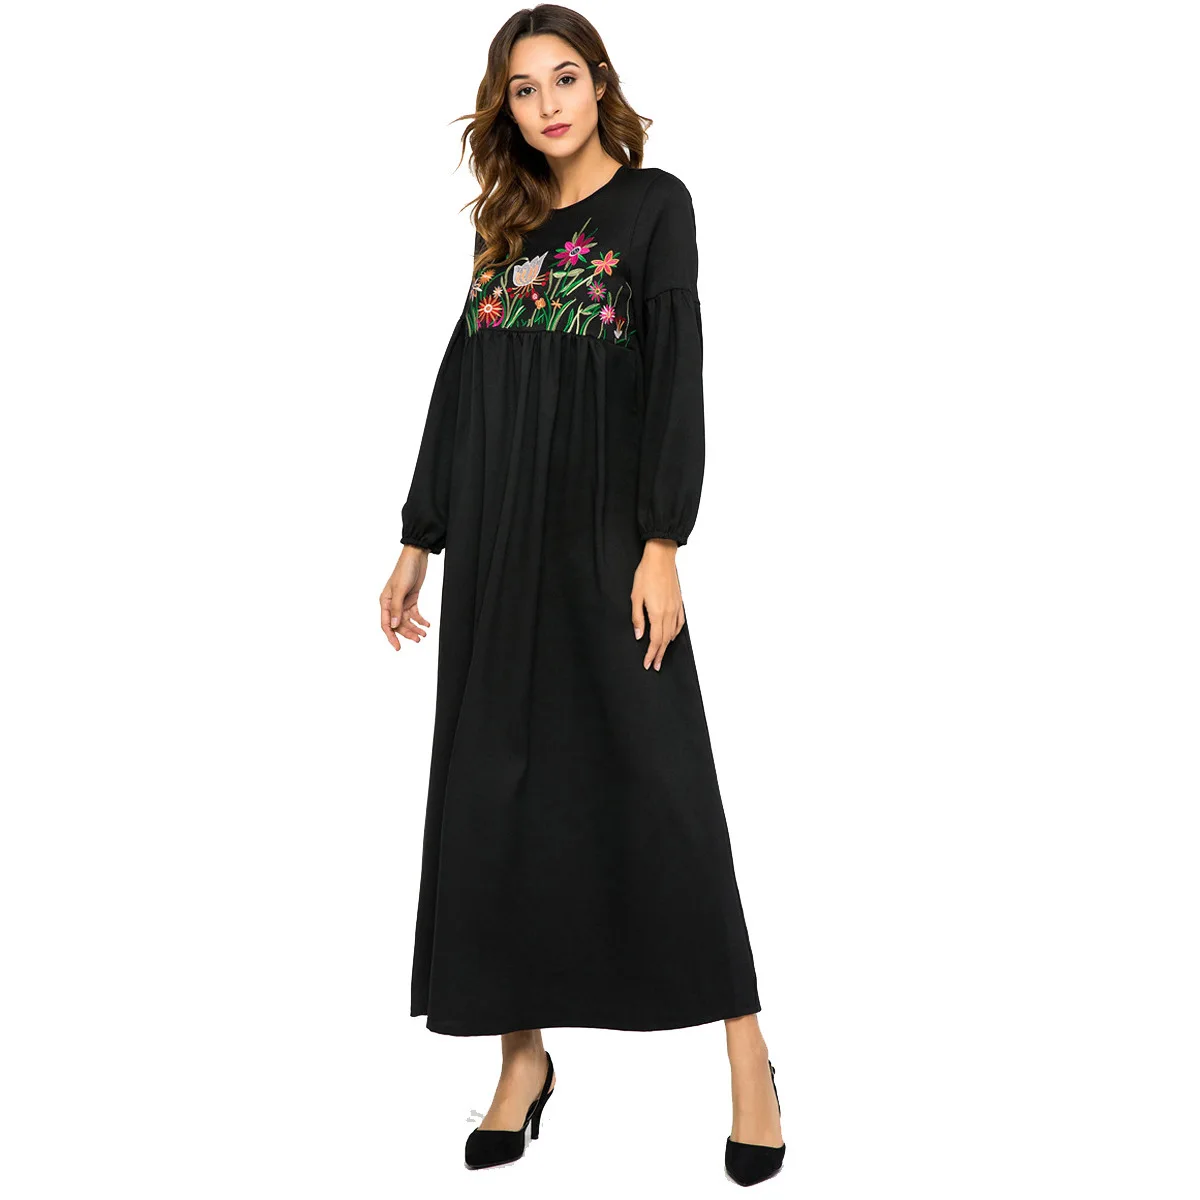 2021 мусульманская длинная юбка с вышивкой в европейском и американском стиле Свободное платье с длинным рукавом Длинная юбка в арабском сти...